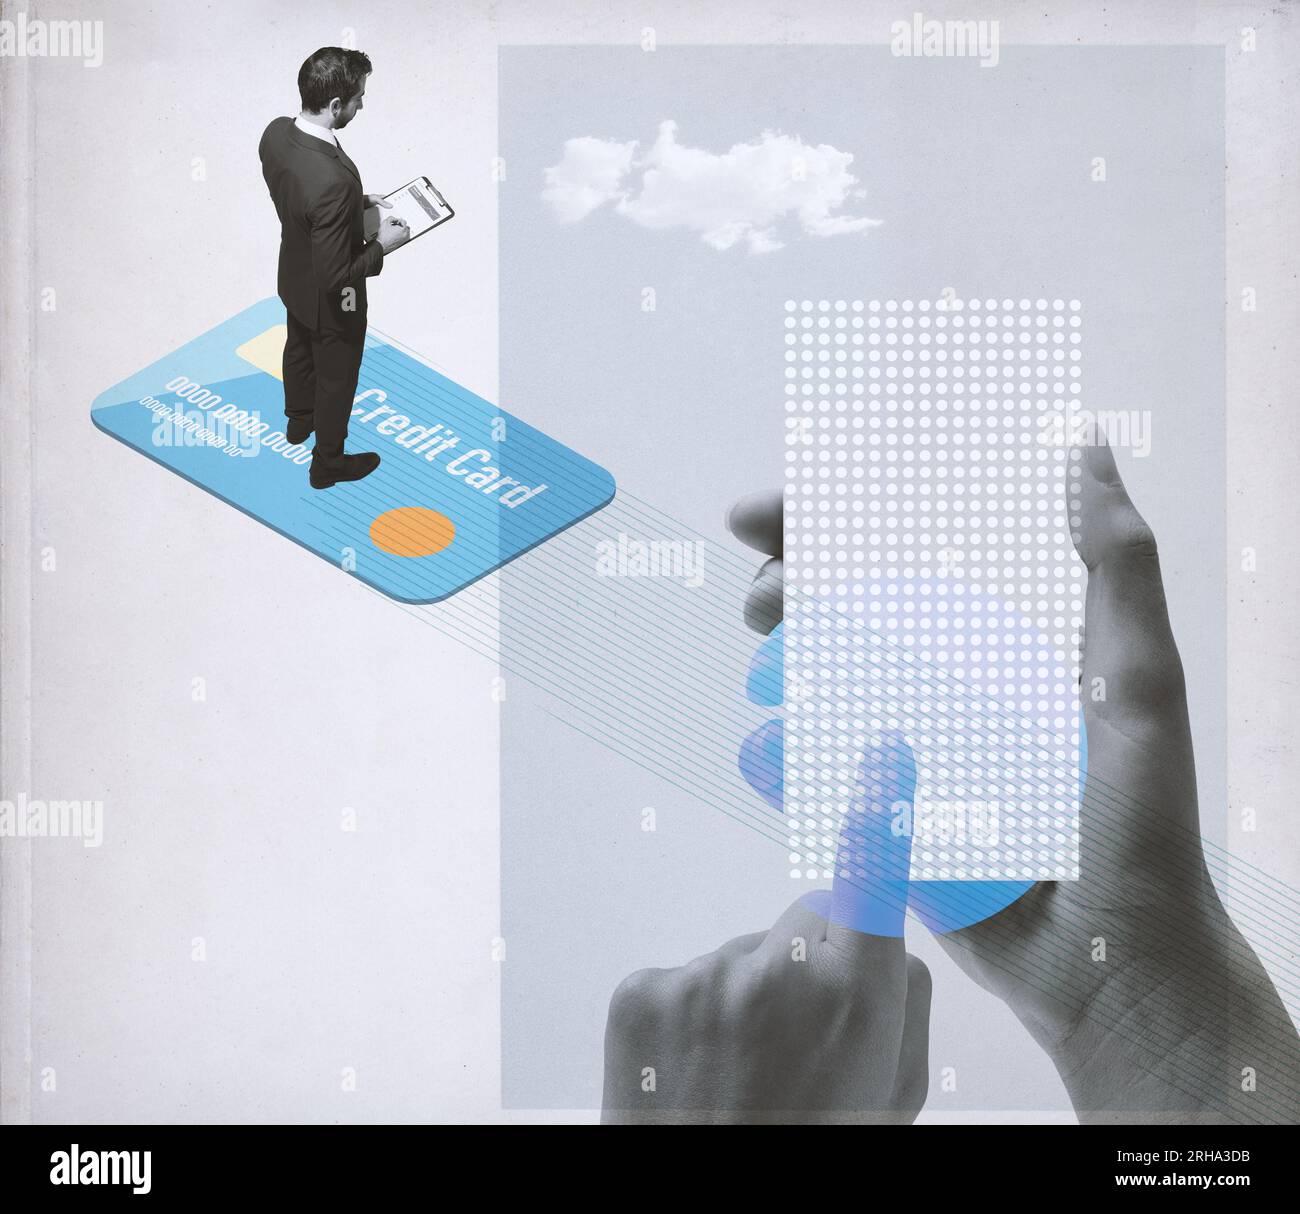 Geschäftsmann, der auf einer Kreditkarte und einer Finanz-App steht: Online-Banking und elektronische Zahlungen, Collage im Vintage-Stil Stockfoto